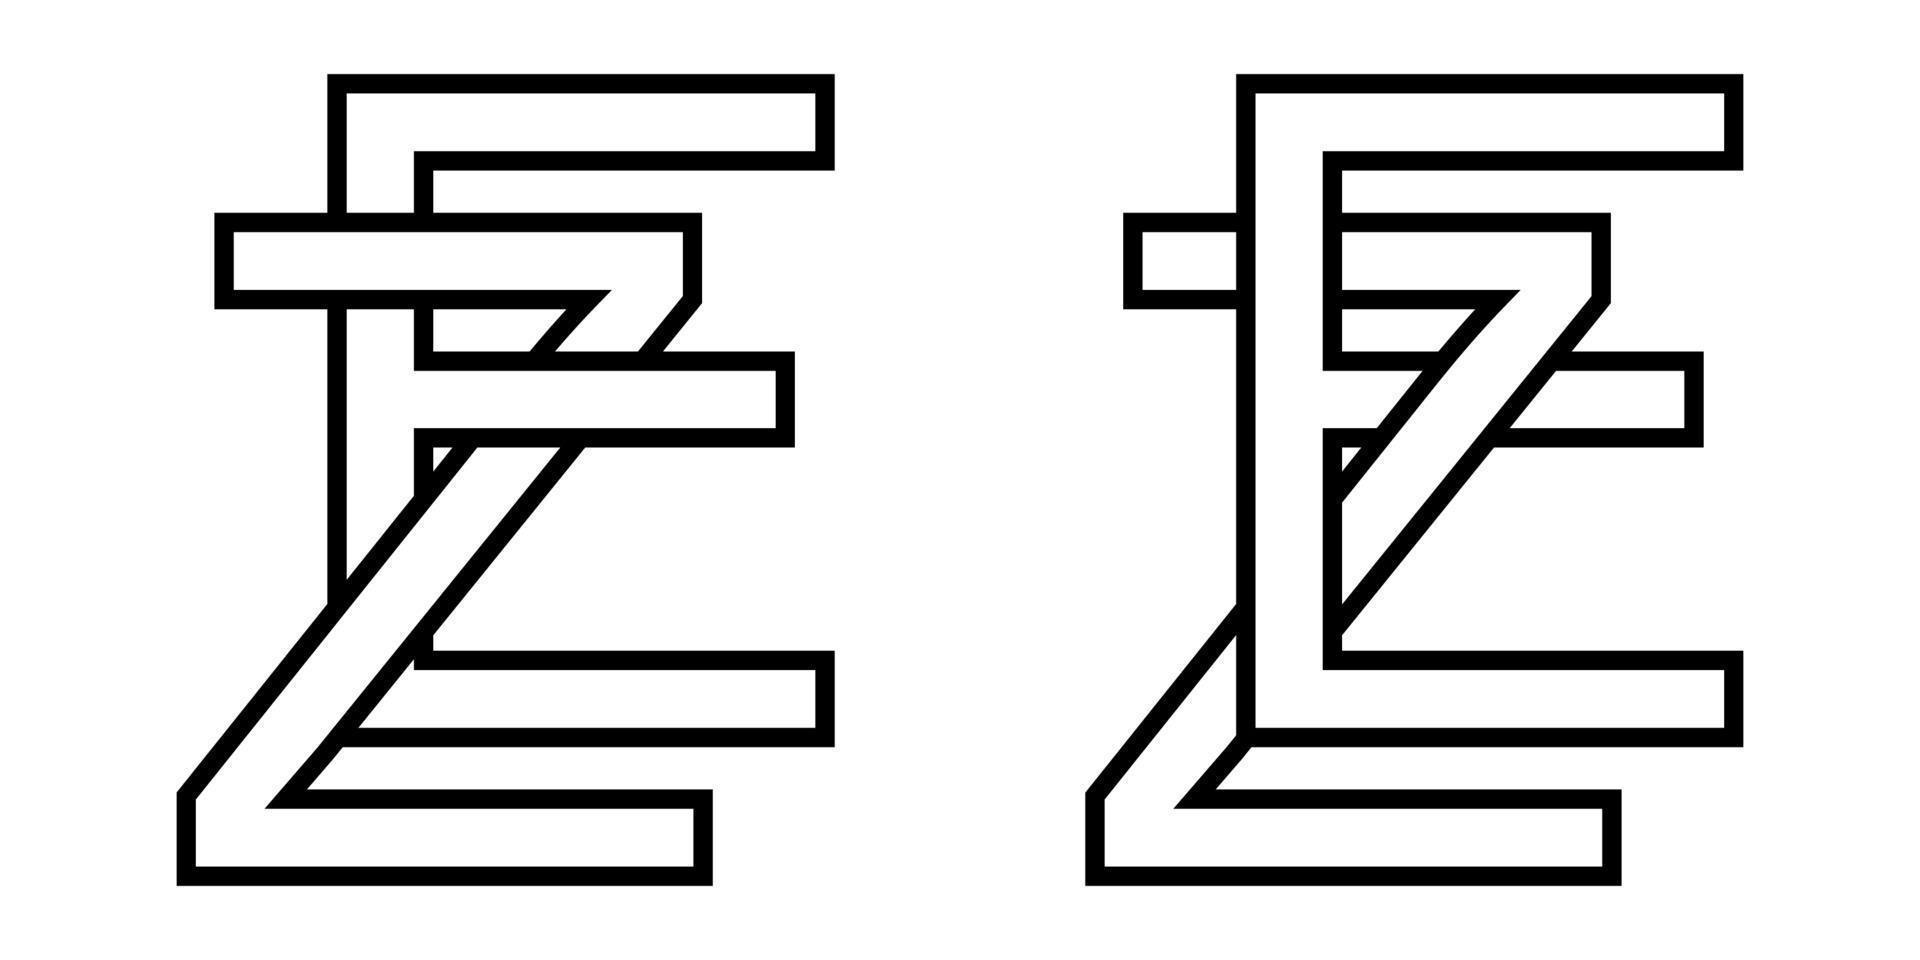 logo firmar ez ze icono firmar entrelazado letras z, mi vector logo ez, ze primero capital letras modelo alfabeto mi, z